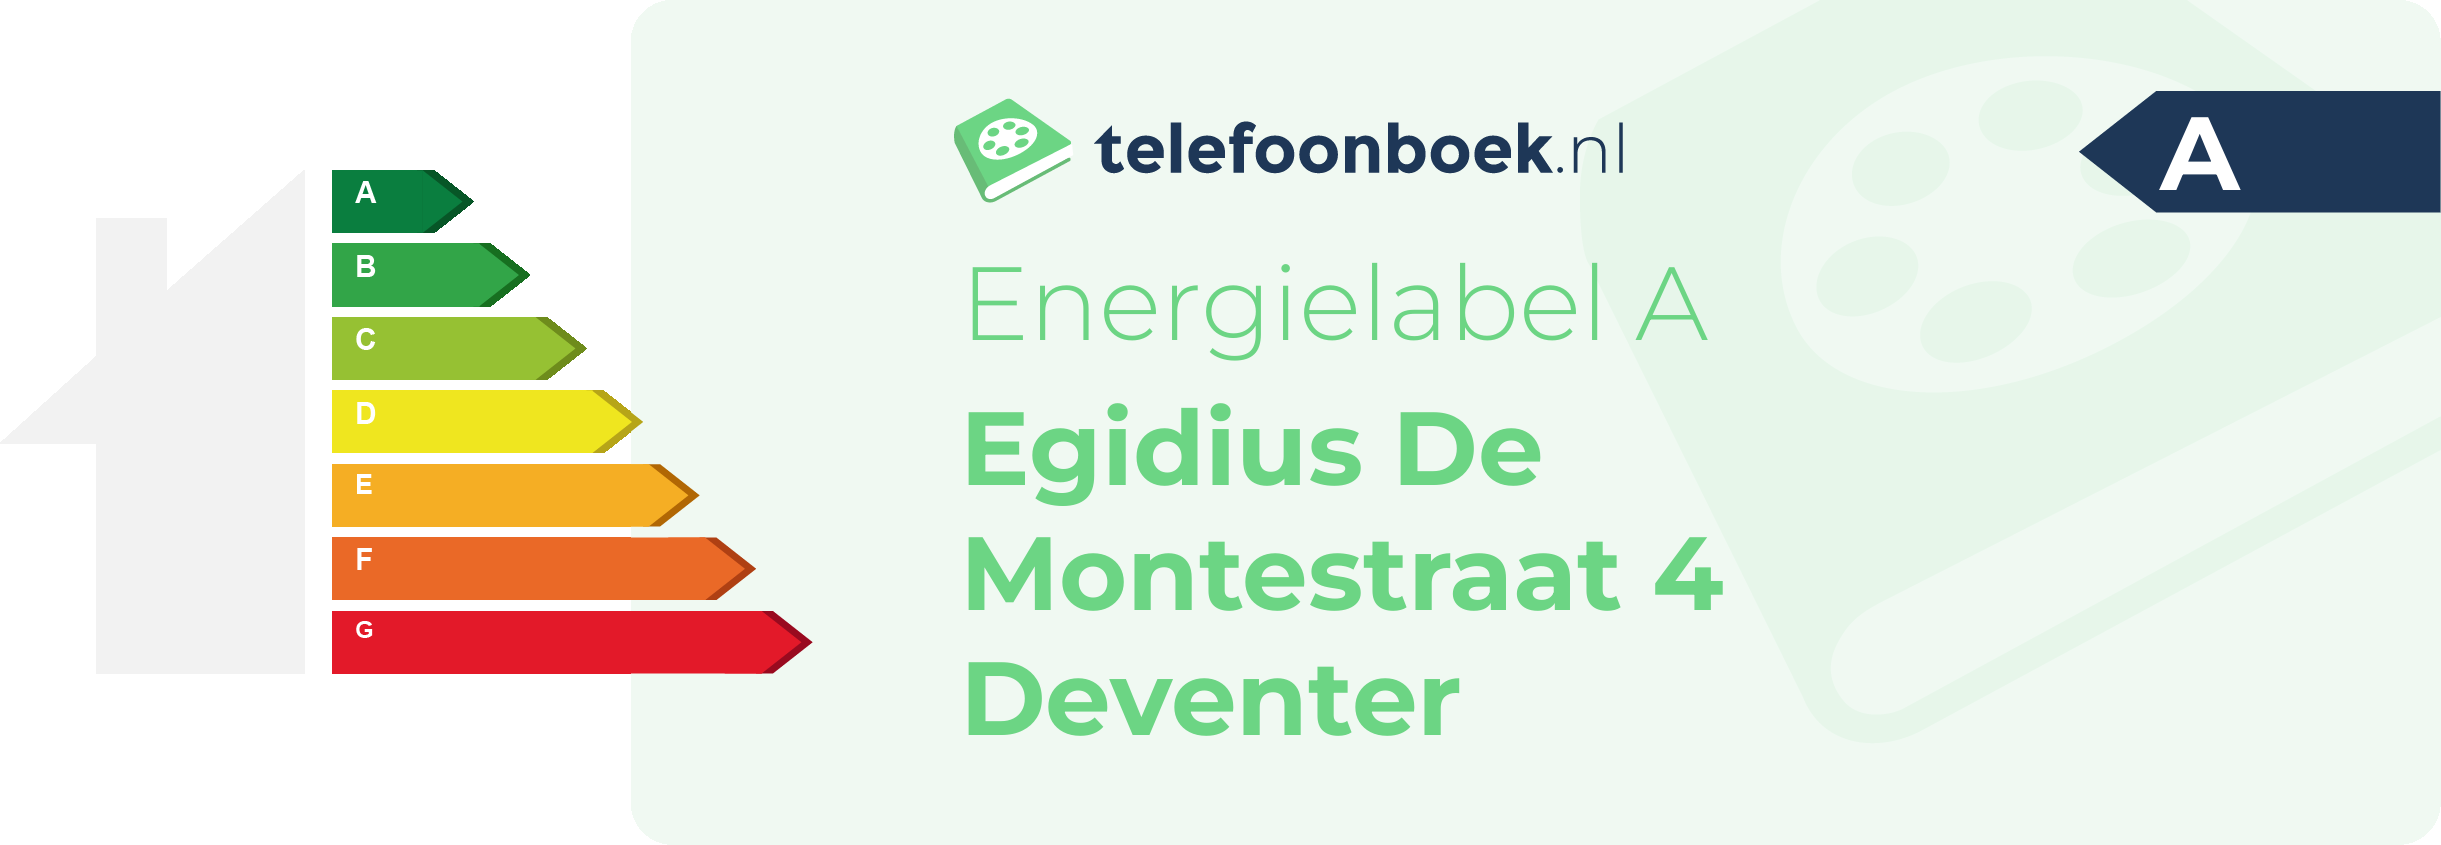 Energielabel Egidius De Montestraat 4 Deventer